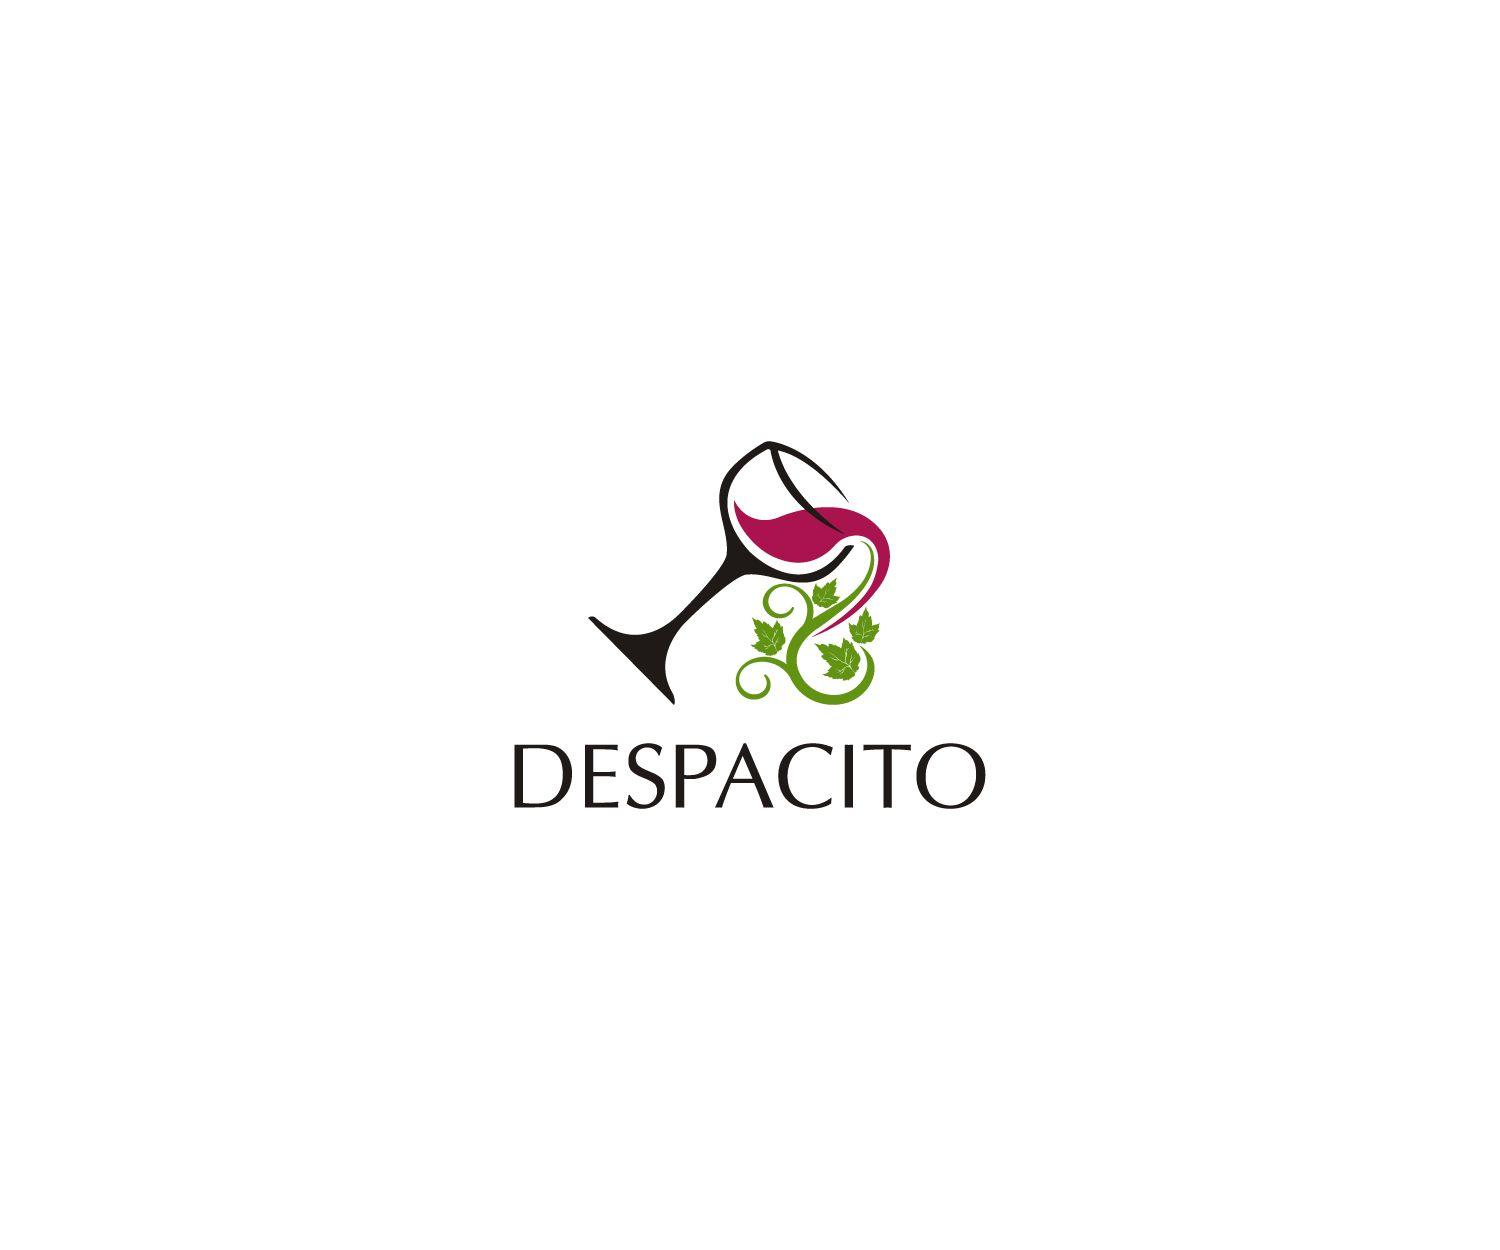 Distributor Logo - Bold, Modern, Distributor Logo Design for Despacito by Mario ...